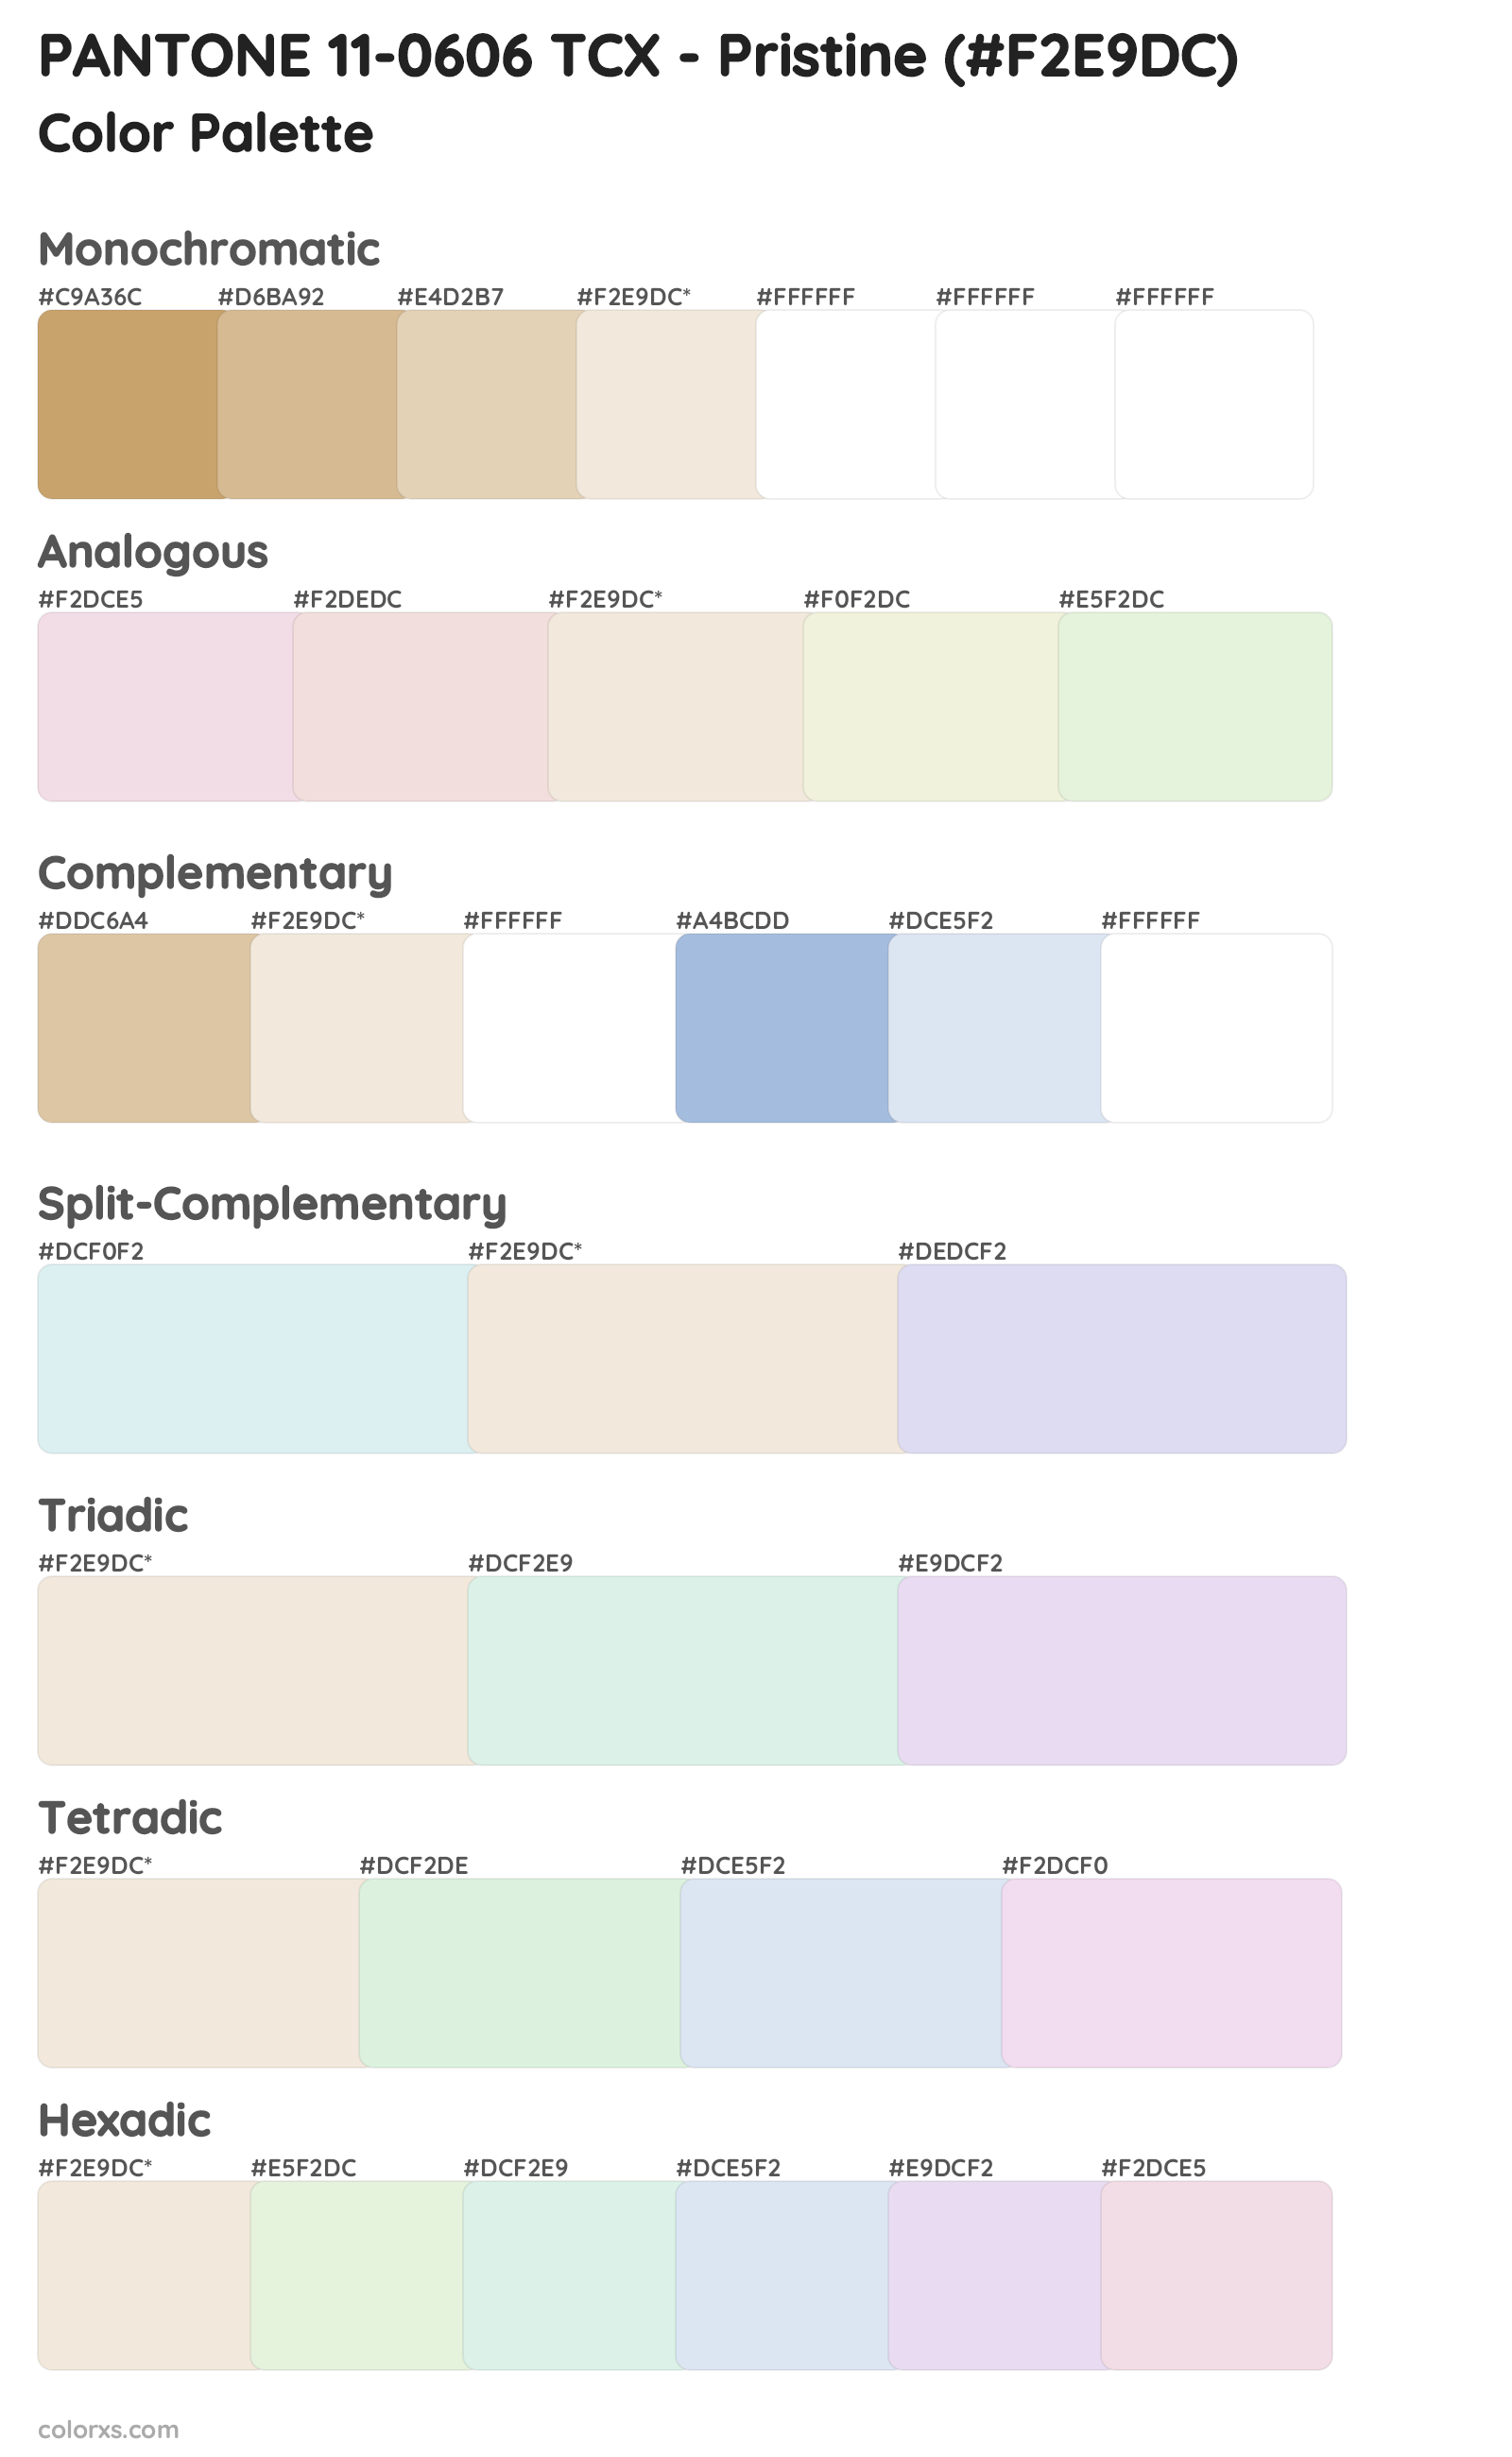 PANTONE 11-0606 TCX - Pristine Color Scheme Palettes